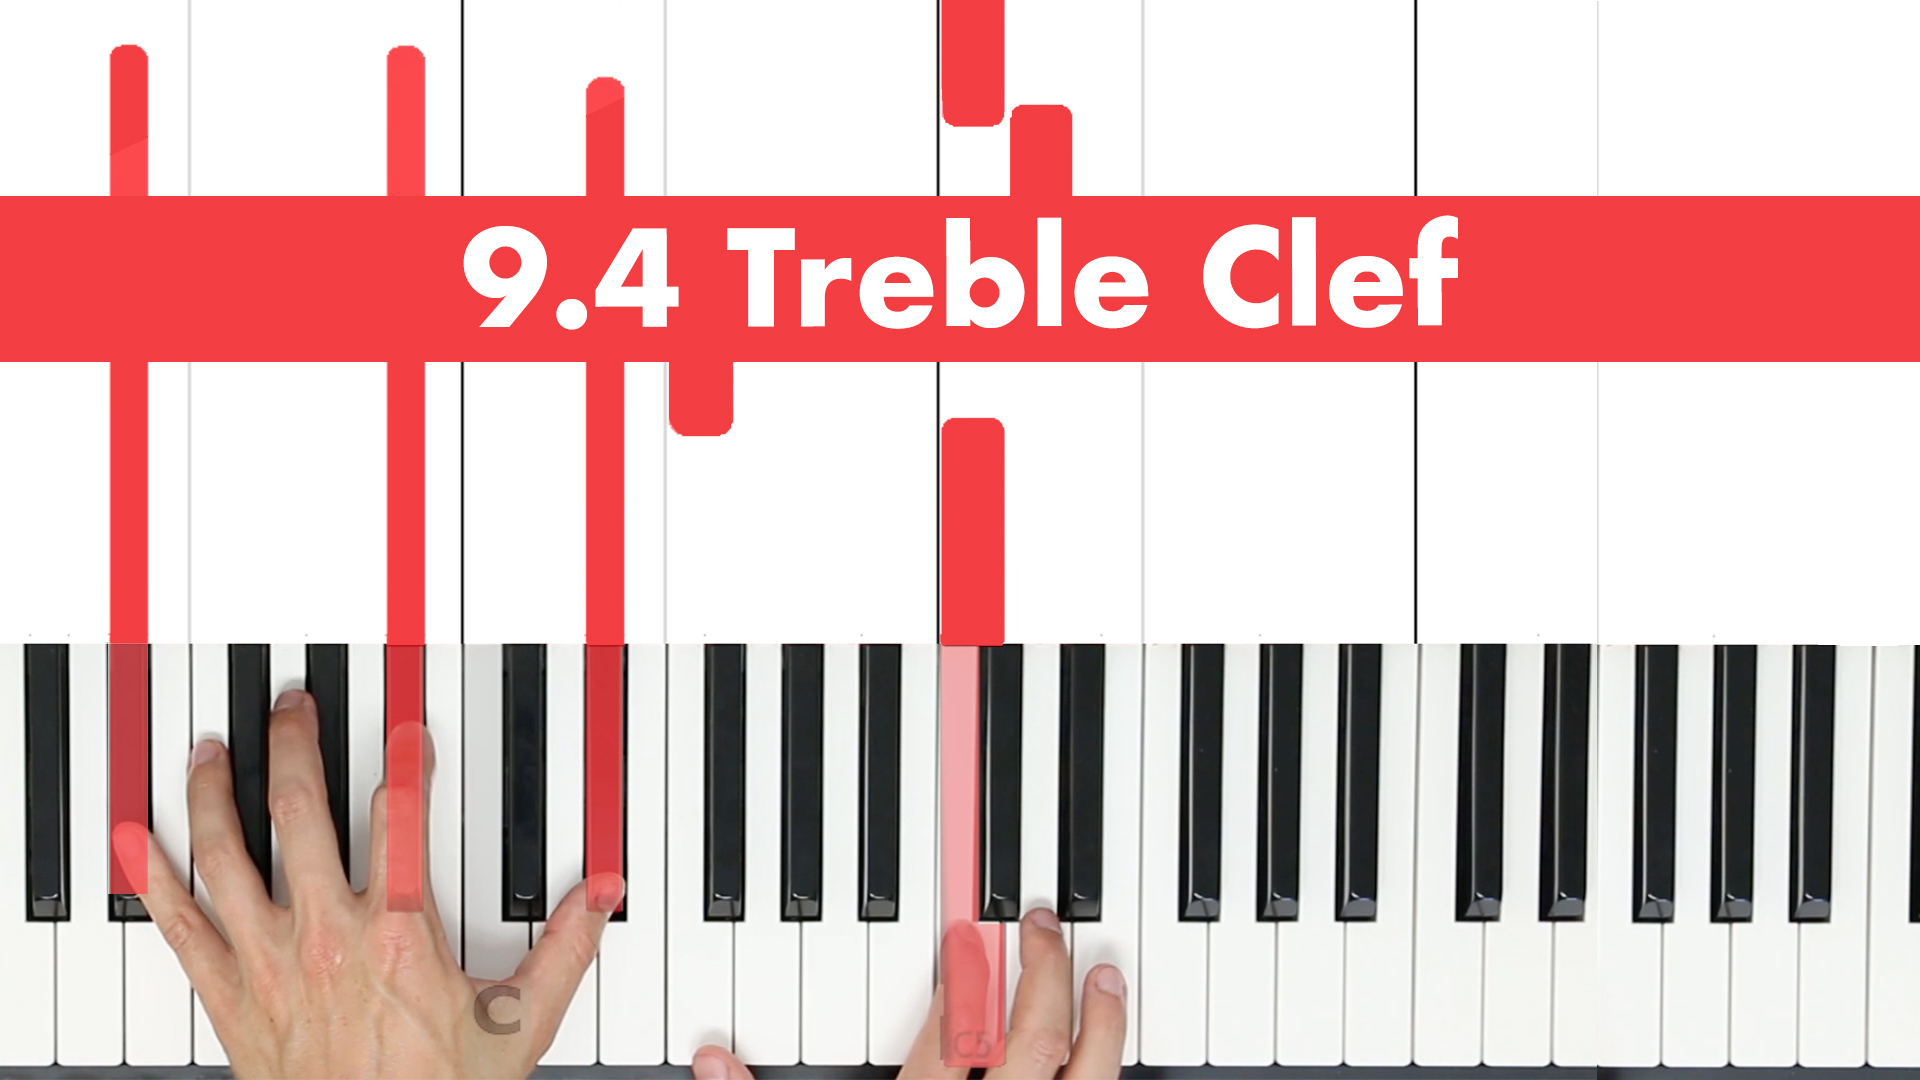 9.4 Treble Clef